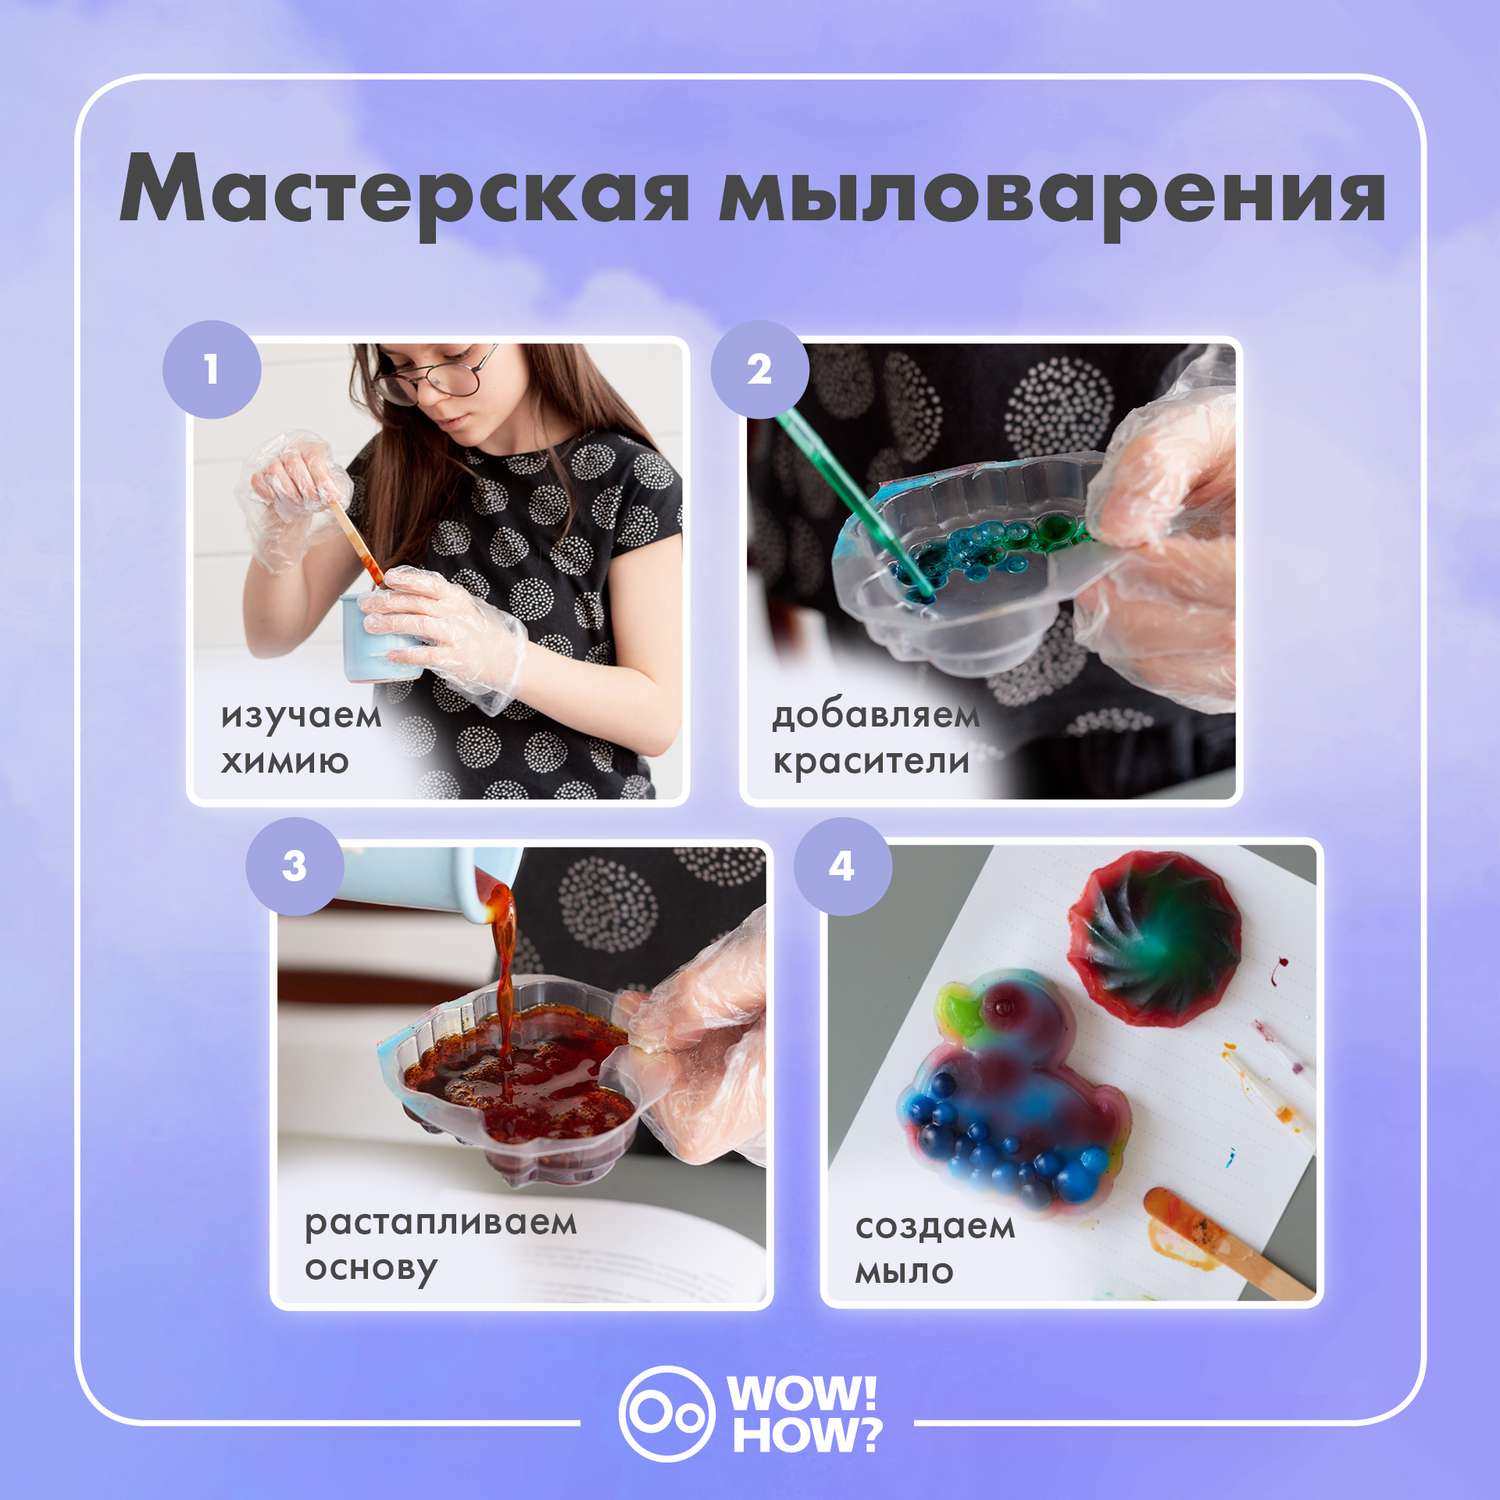 ВСЁ ДЛЯ МЫЛОВАРА - мыльная основа/Новосибирск | ВКонтакте